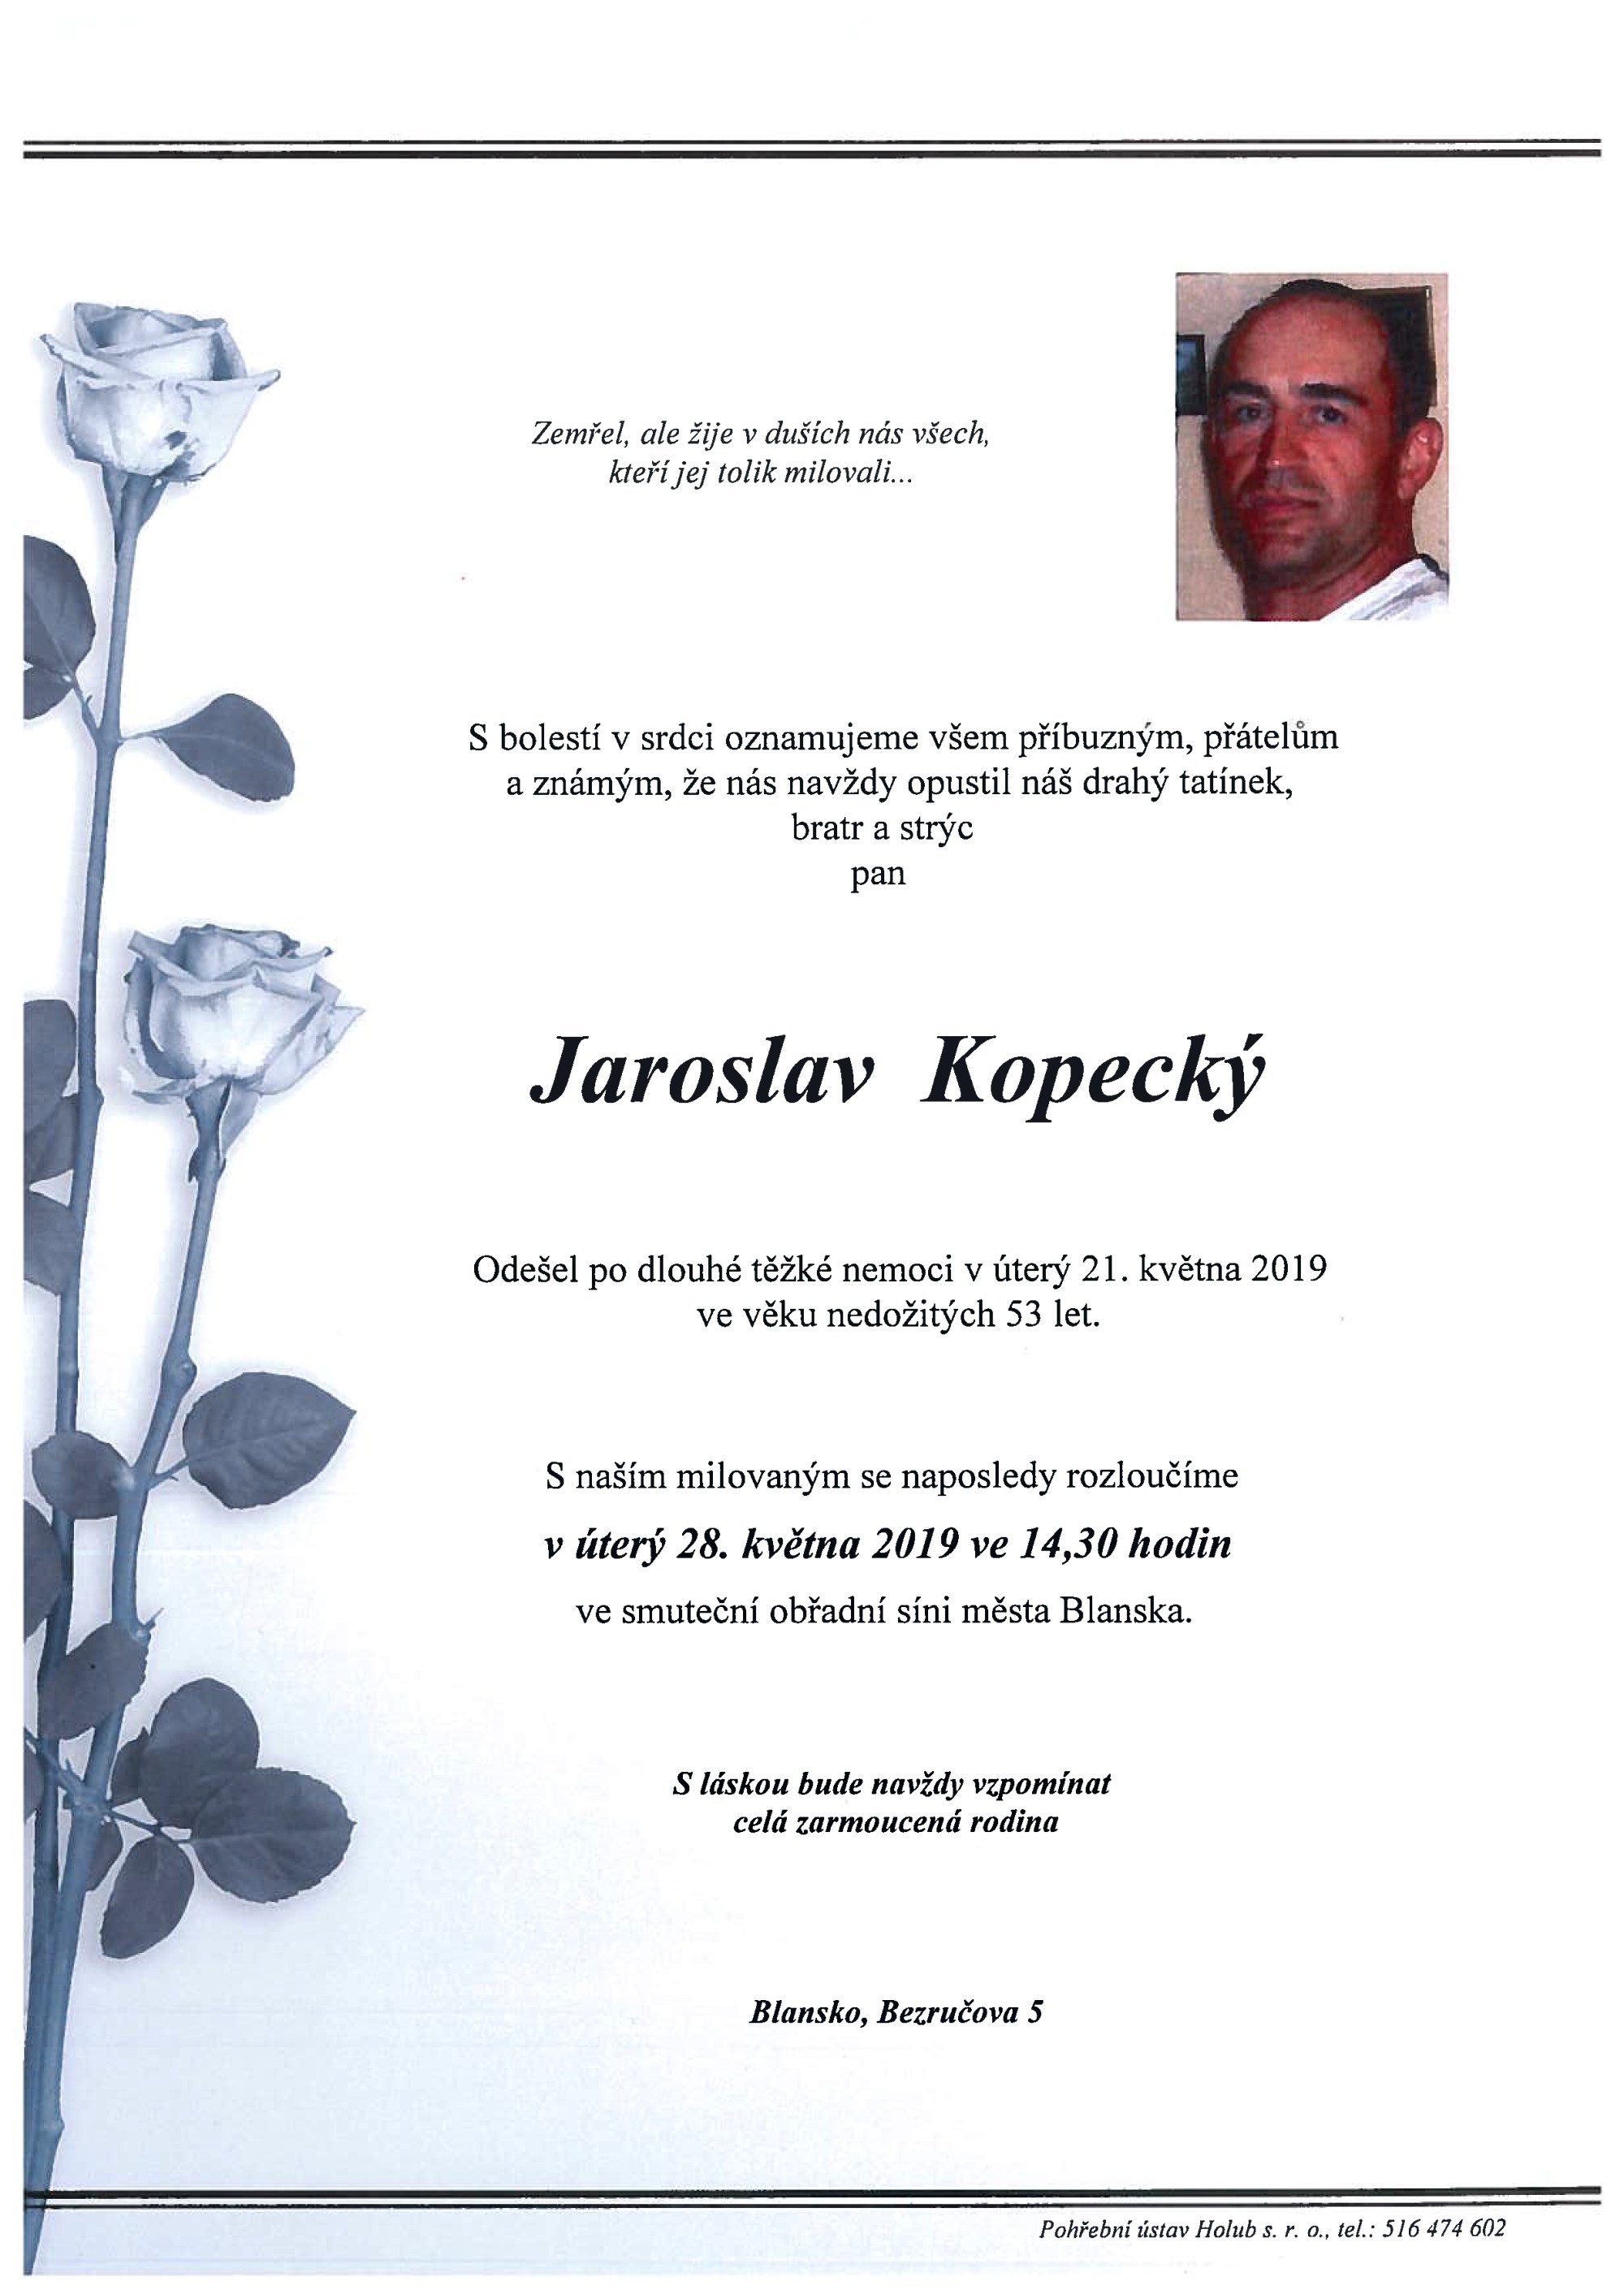 Jaroslav Kopecký